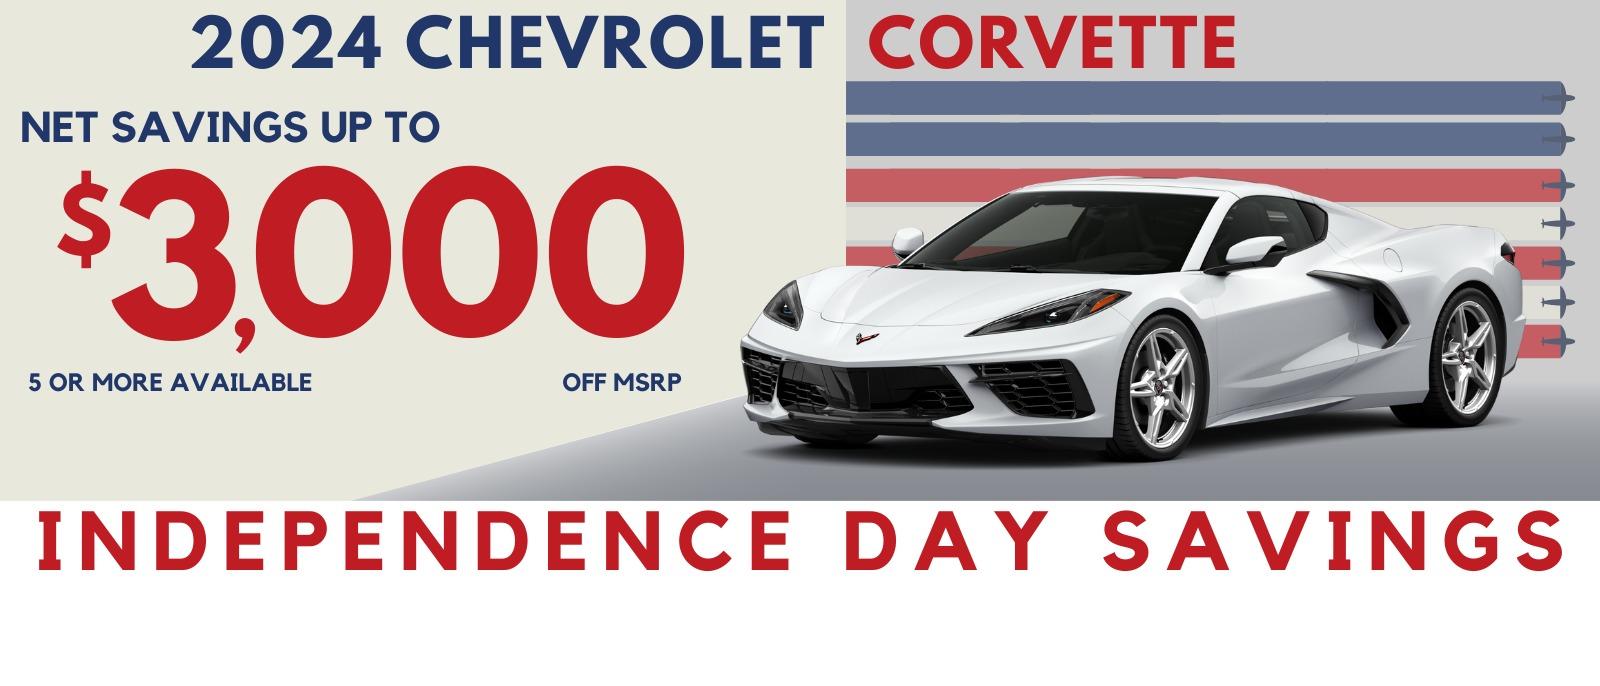 Int 2024 Corvette Savings - Net Savings of $3,000 off MSRP